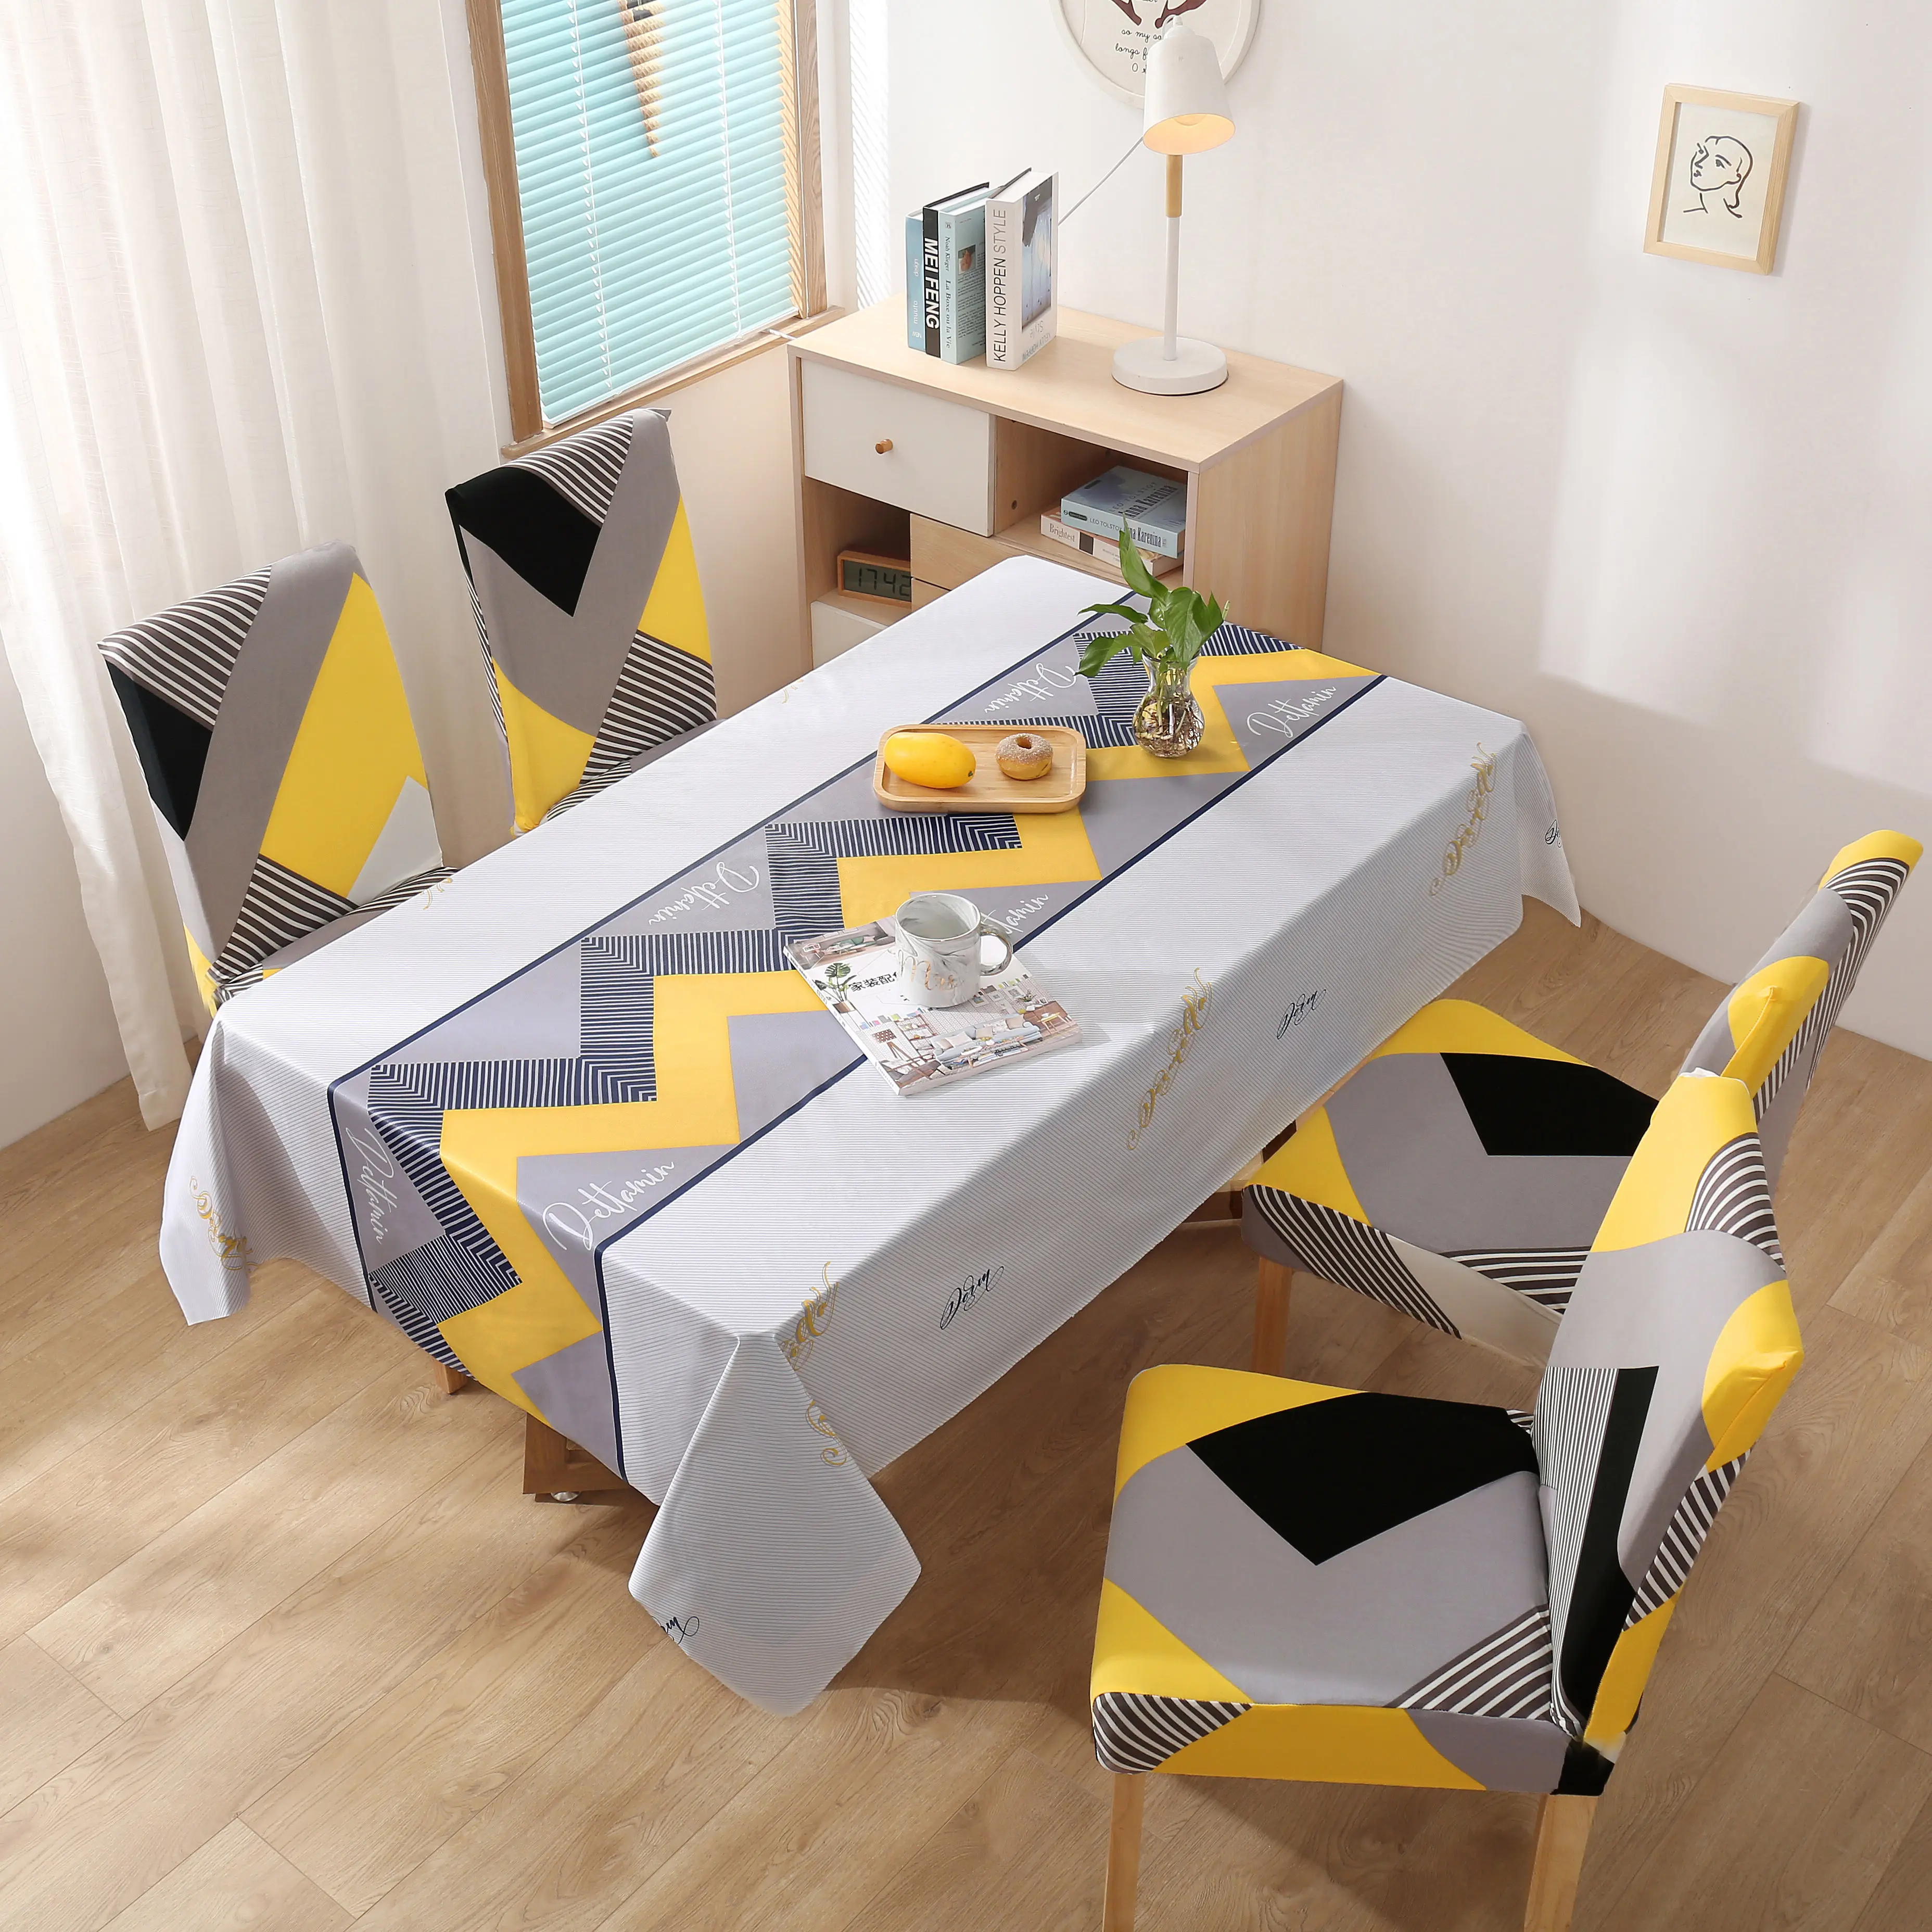 ผ้าปูโต๊ะ PVC ทรงสี่เหลี่ยมผืนผ้า,ผ้าคลุมโต๊ะกาแฟชากันน้ำมันใช้ตกแต่งบ้านผ้าคลุมโต๊ะและเก้าอี้